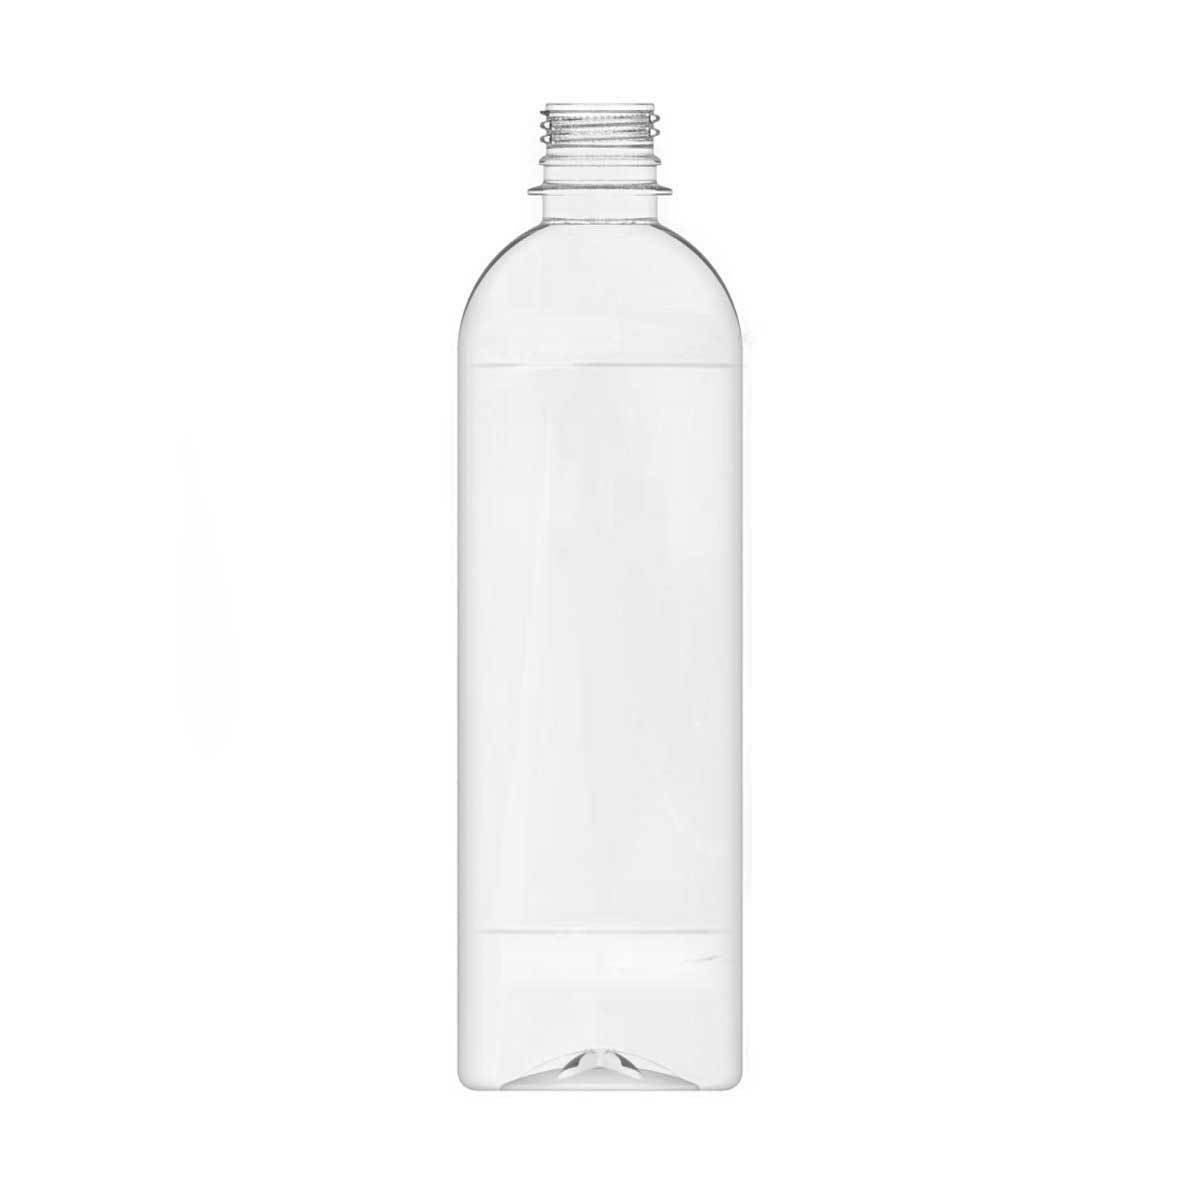 Branded Purified Water Bottles Boston 600Ml BWB-BOSTON 600ML | Clear